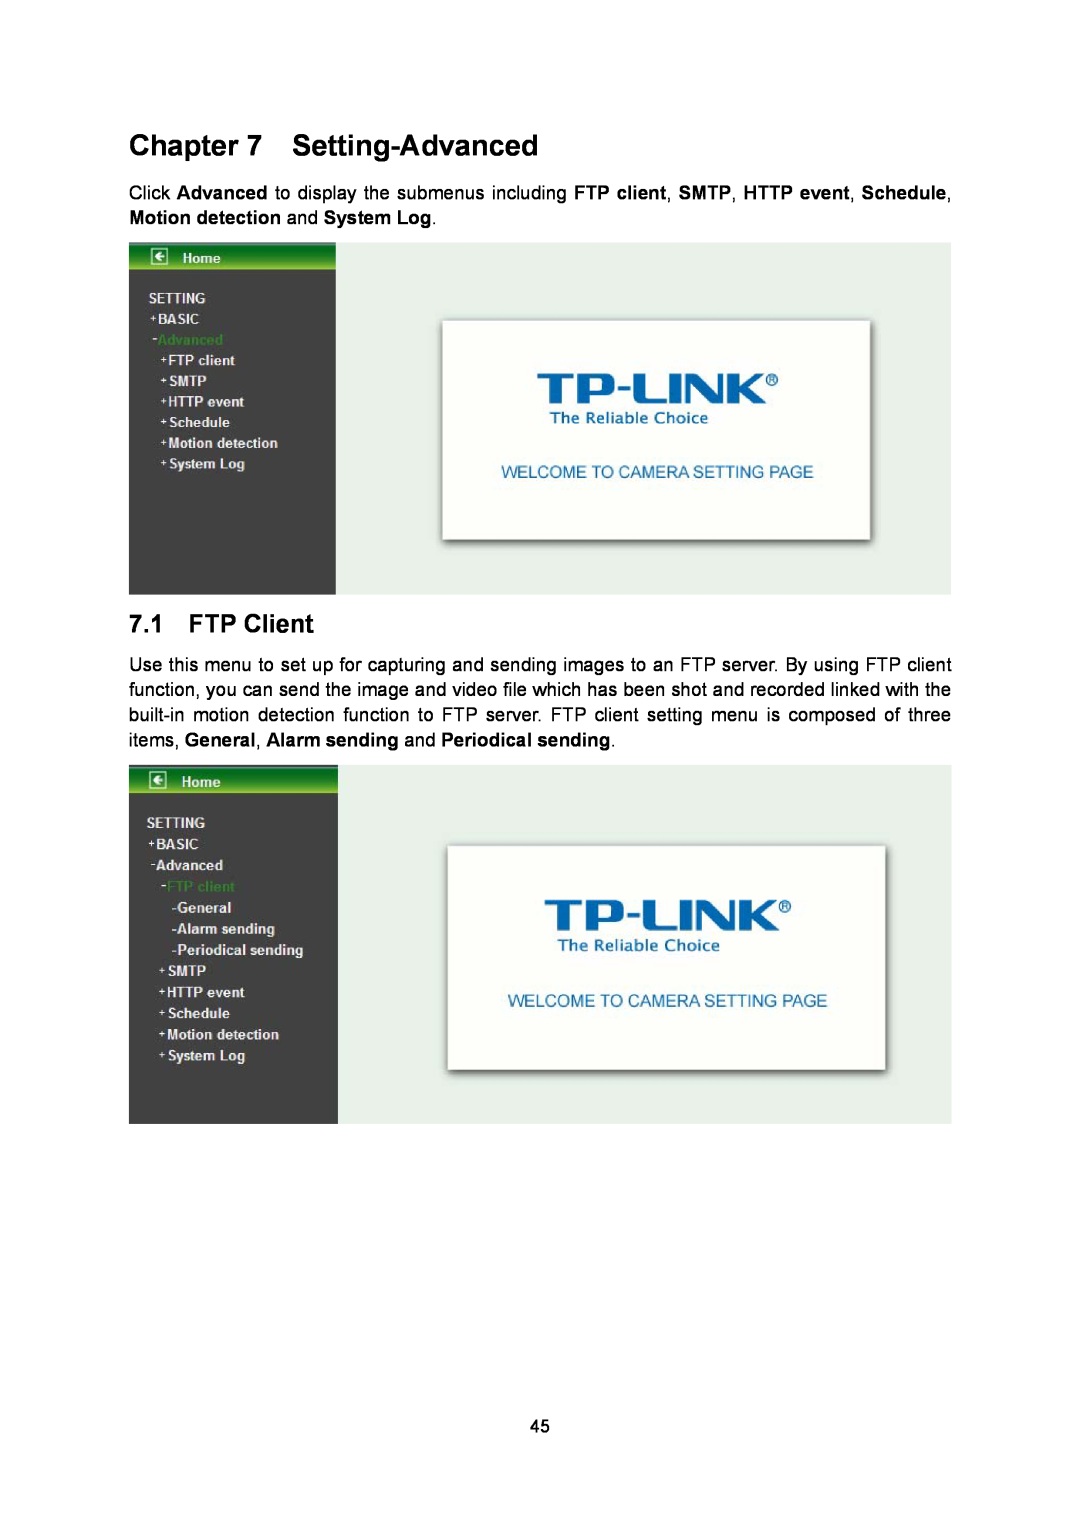 TP-Link TL-SC3130G manual Setting-Advanced, FTP Client 